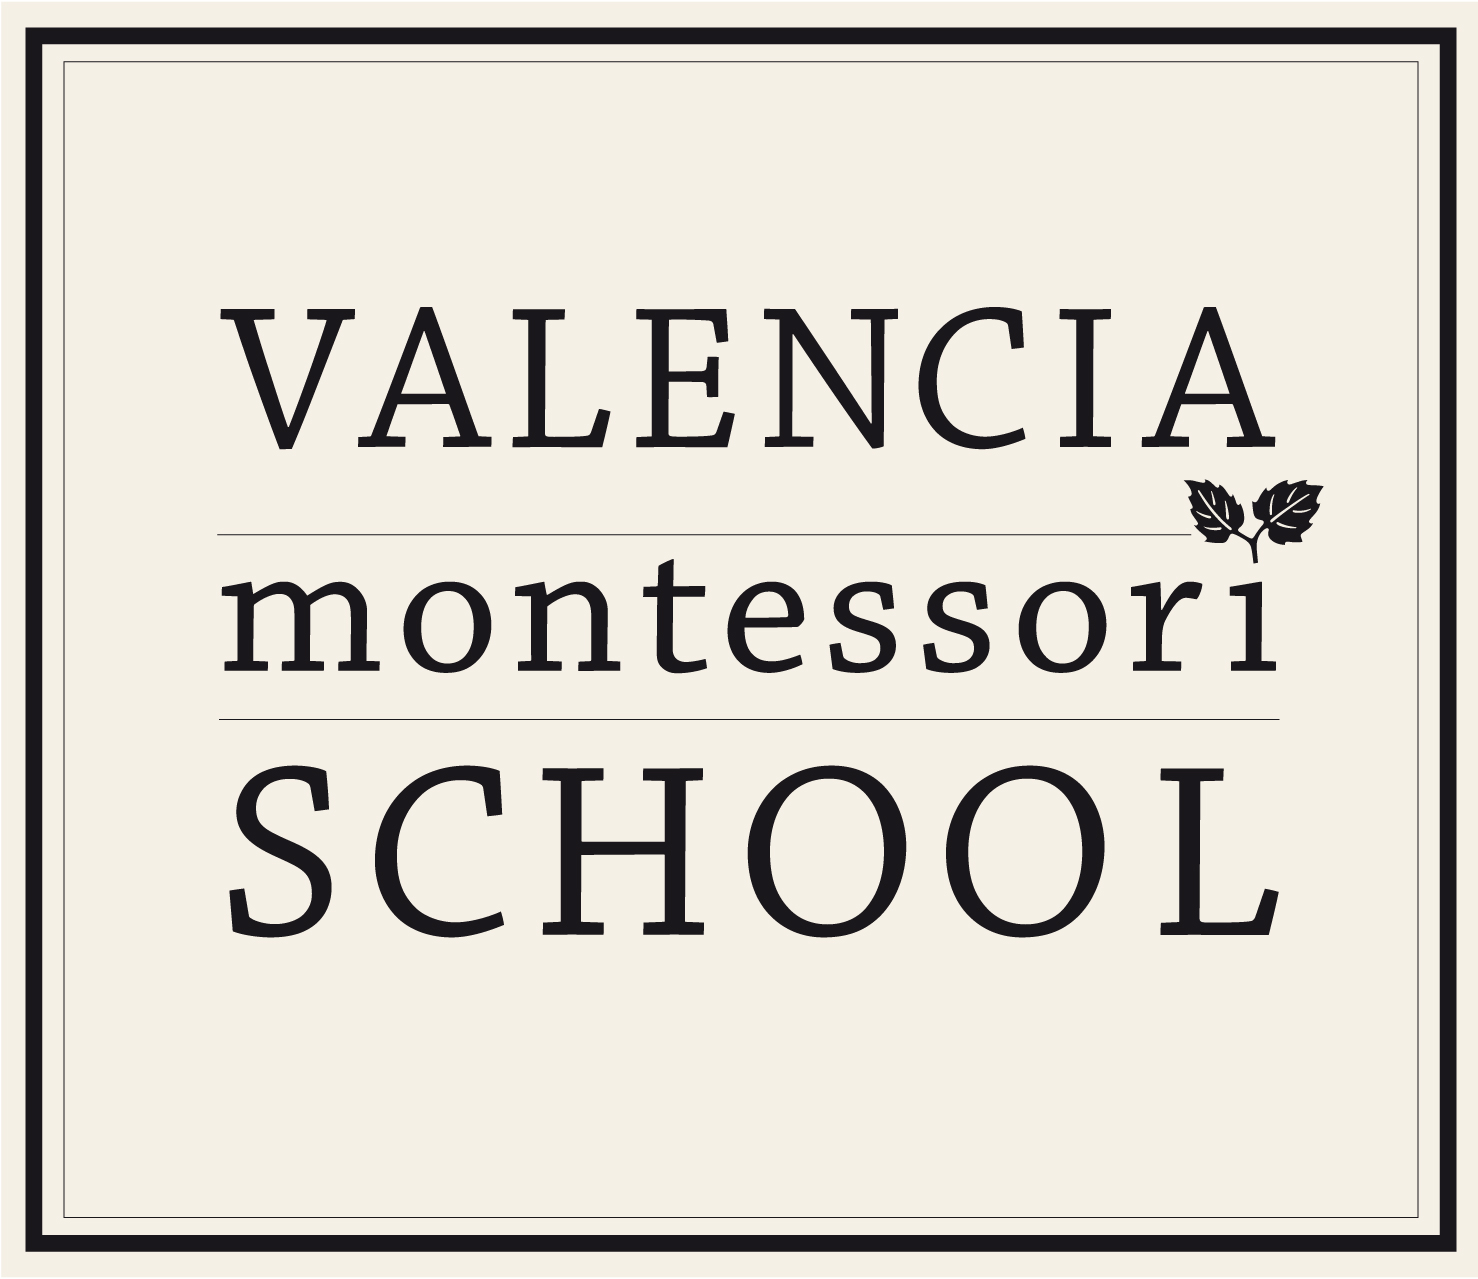 Valencia Montessori School